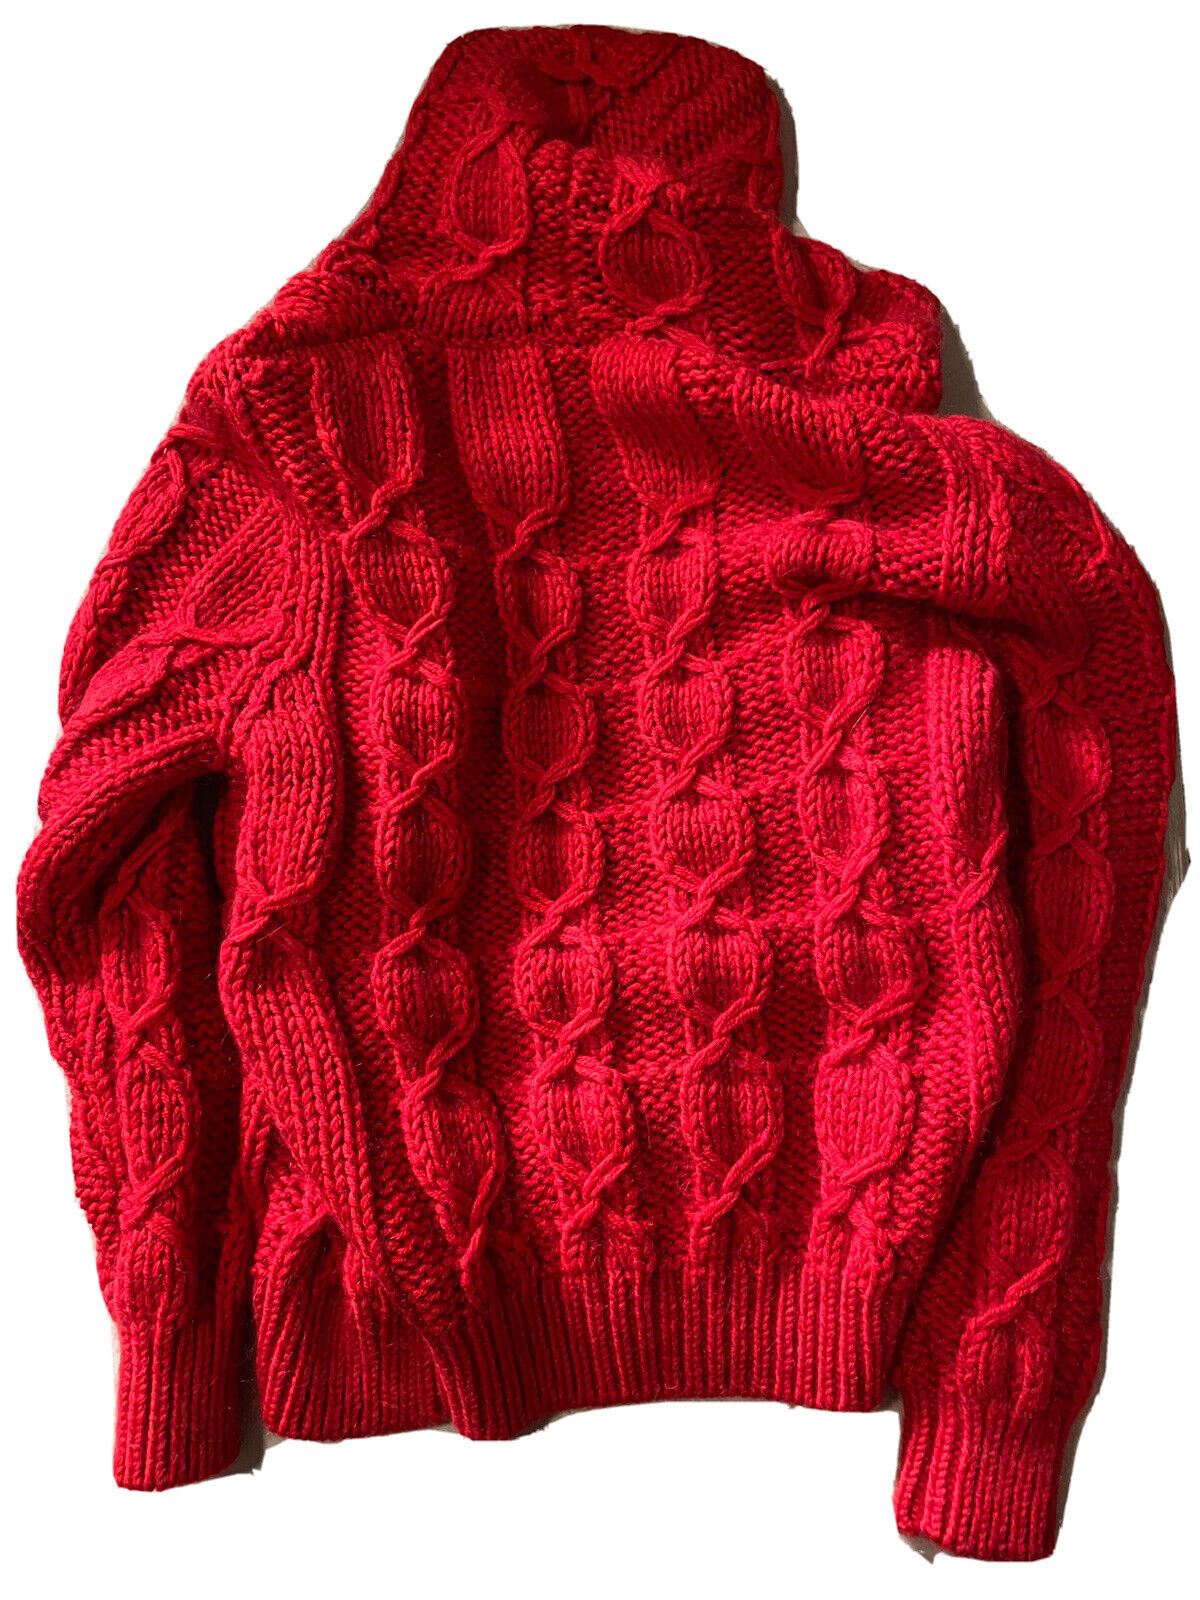 NWT $1190 Saint Laurent Мужской кардиган вязанной вязки с капюшоном Красный S Италия